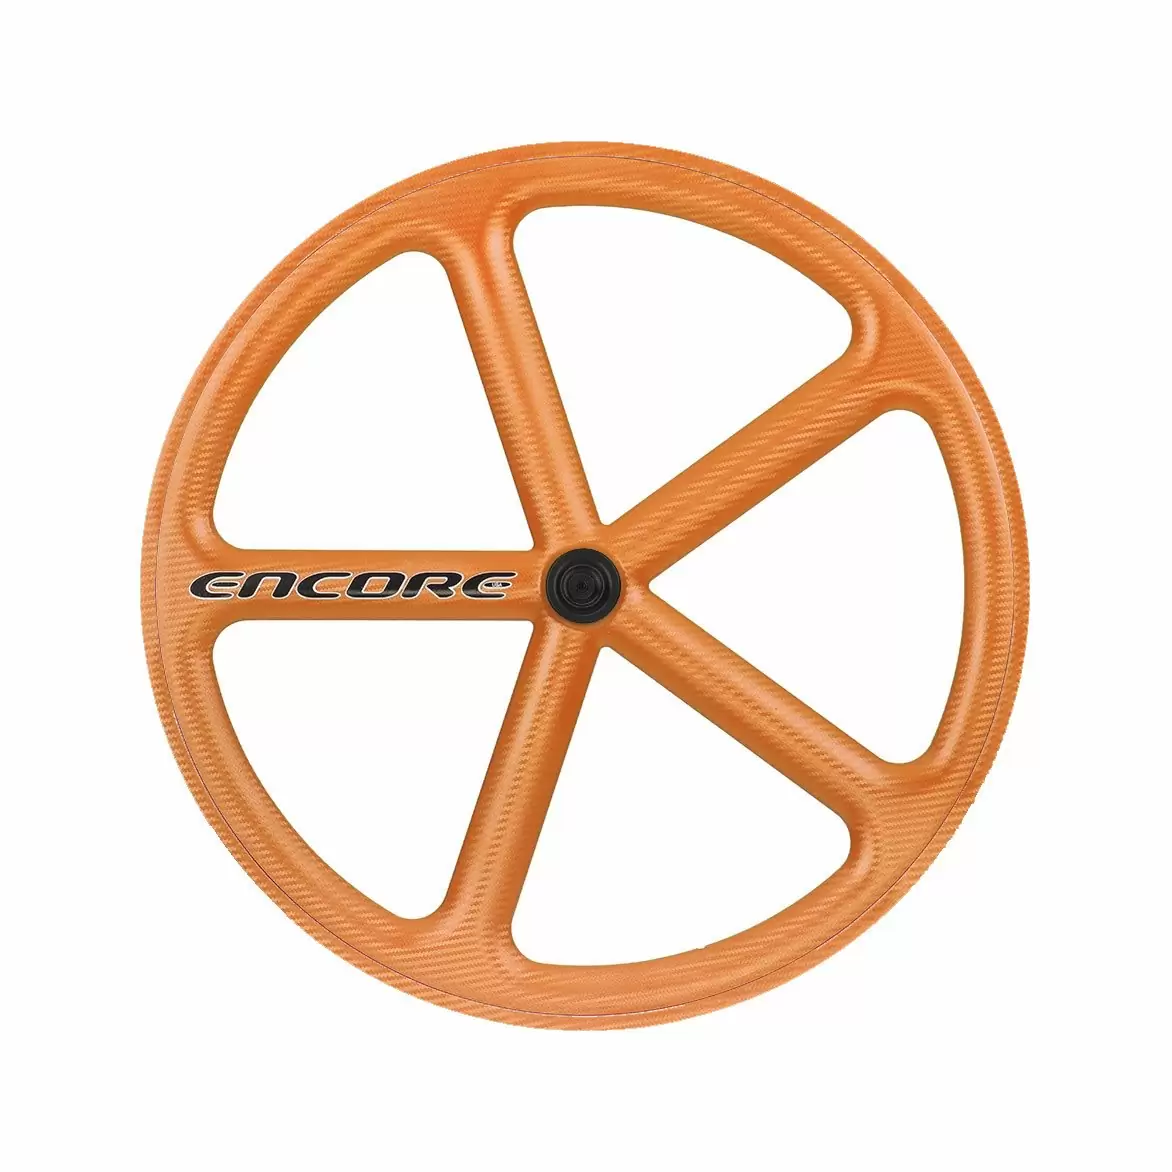 Hinterrad 700c Track 5-Speichen Carbon-Gewebe orange nmsw - image